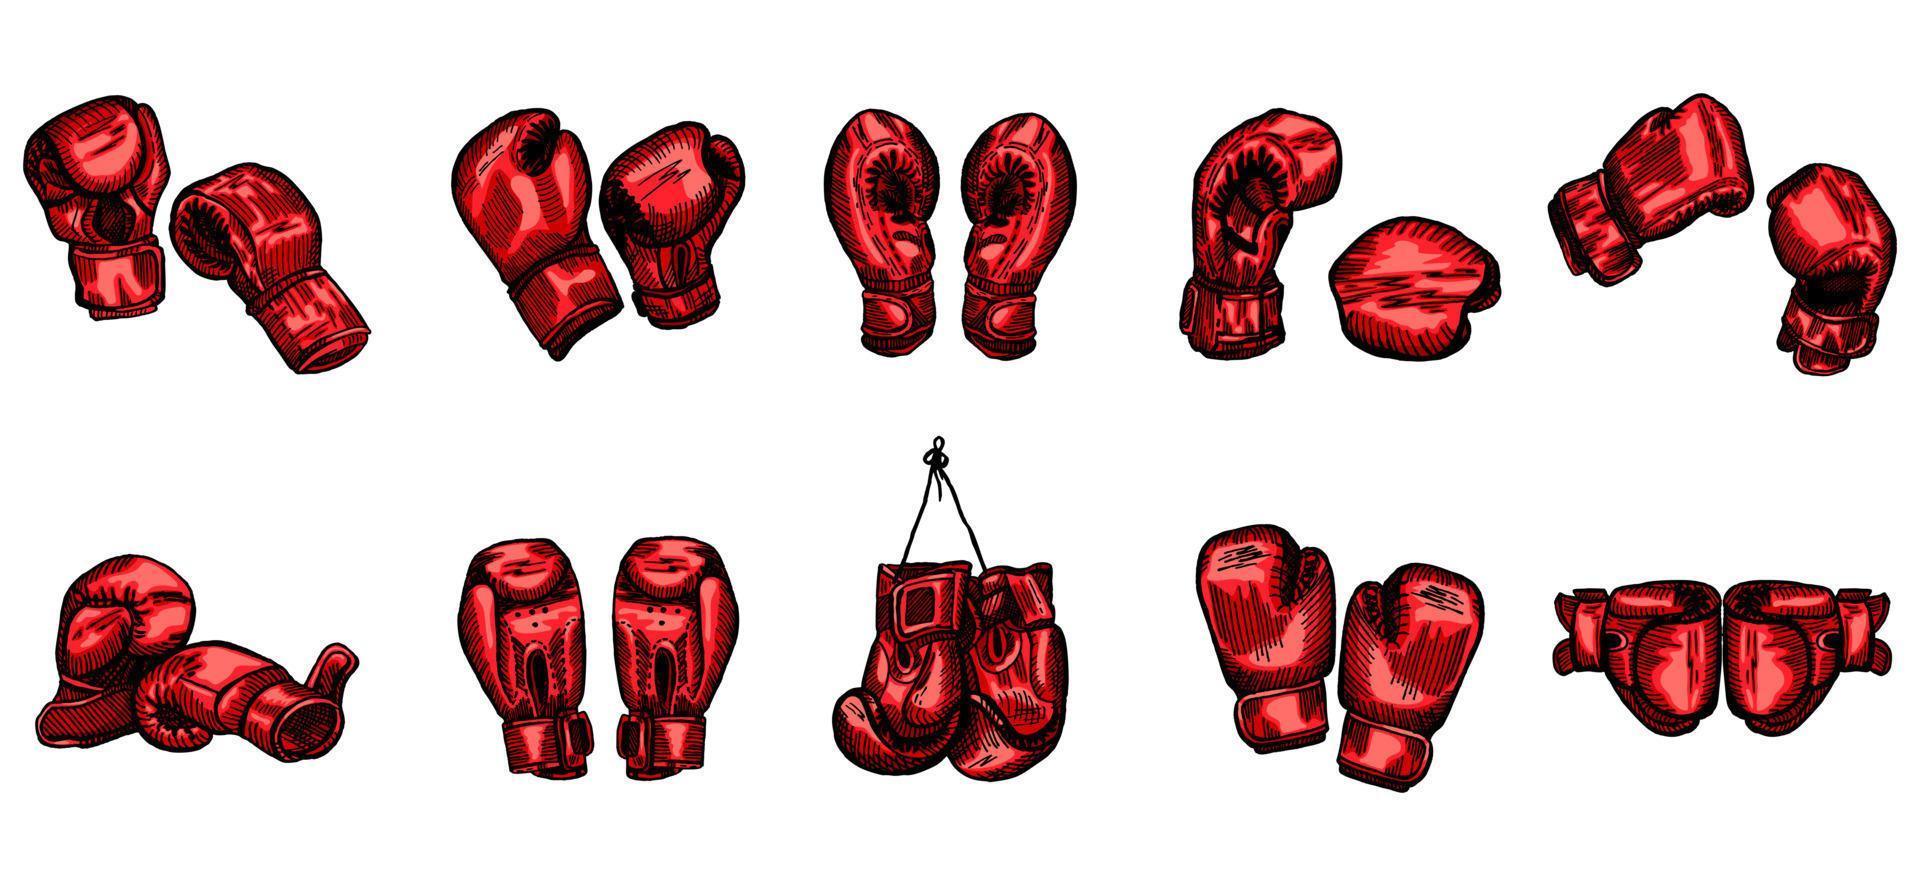 définir des croquis de gants de boxe rouges sur fond blanc isolé. équipement sportif vintage pour le kickboxing dans un style gravé. vecteur